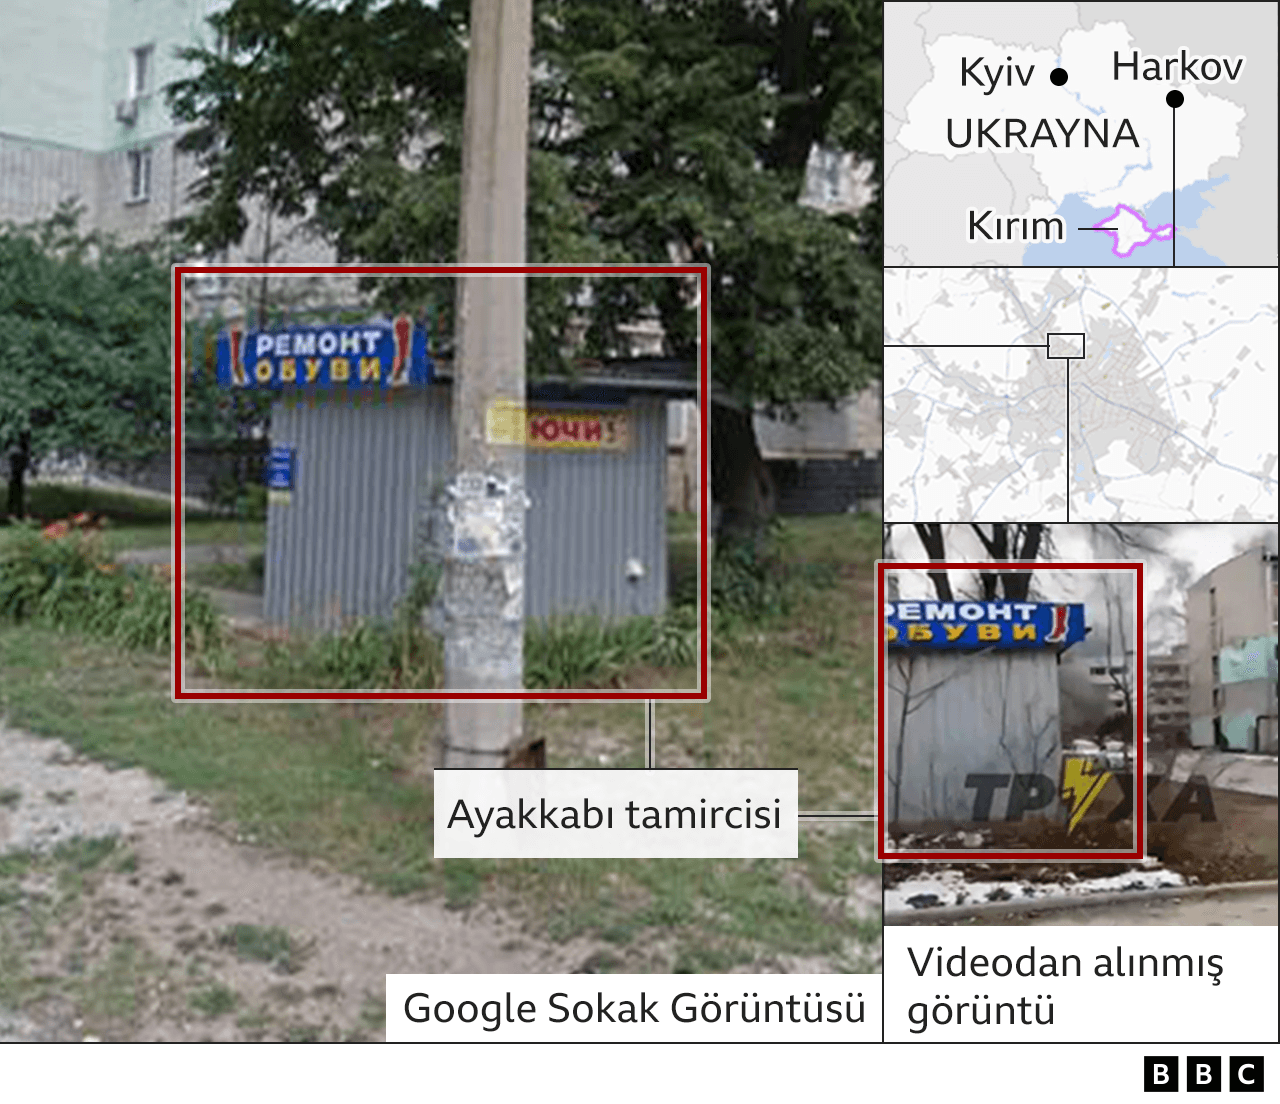 Harkov'da bombanın düştüğü yeri tespit için kullanılan su sebili ve ayakkabı tamircisinin görüntüleri